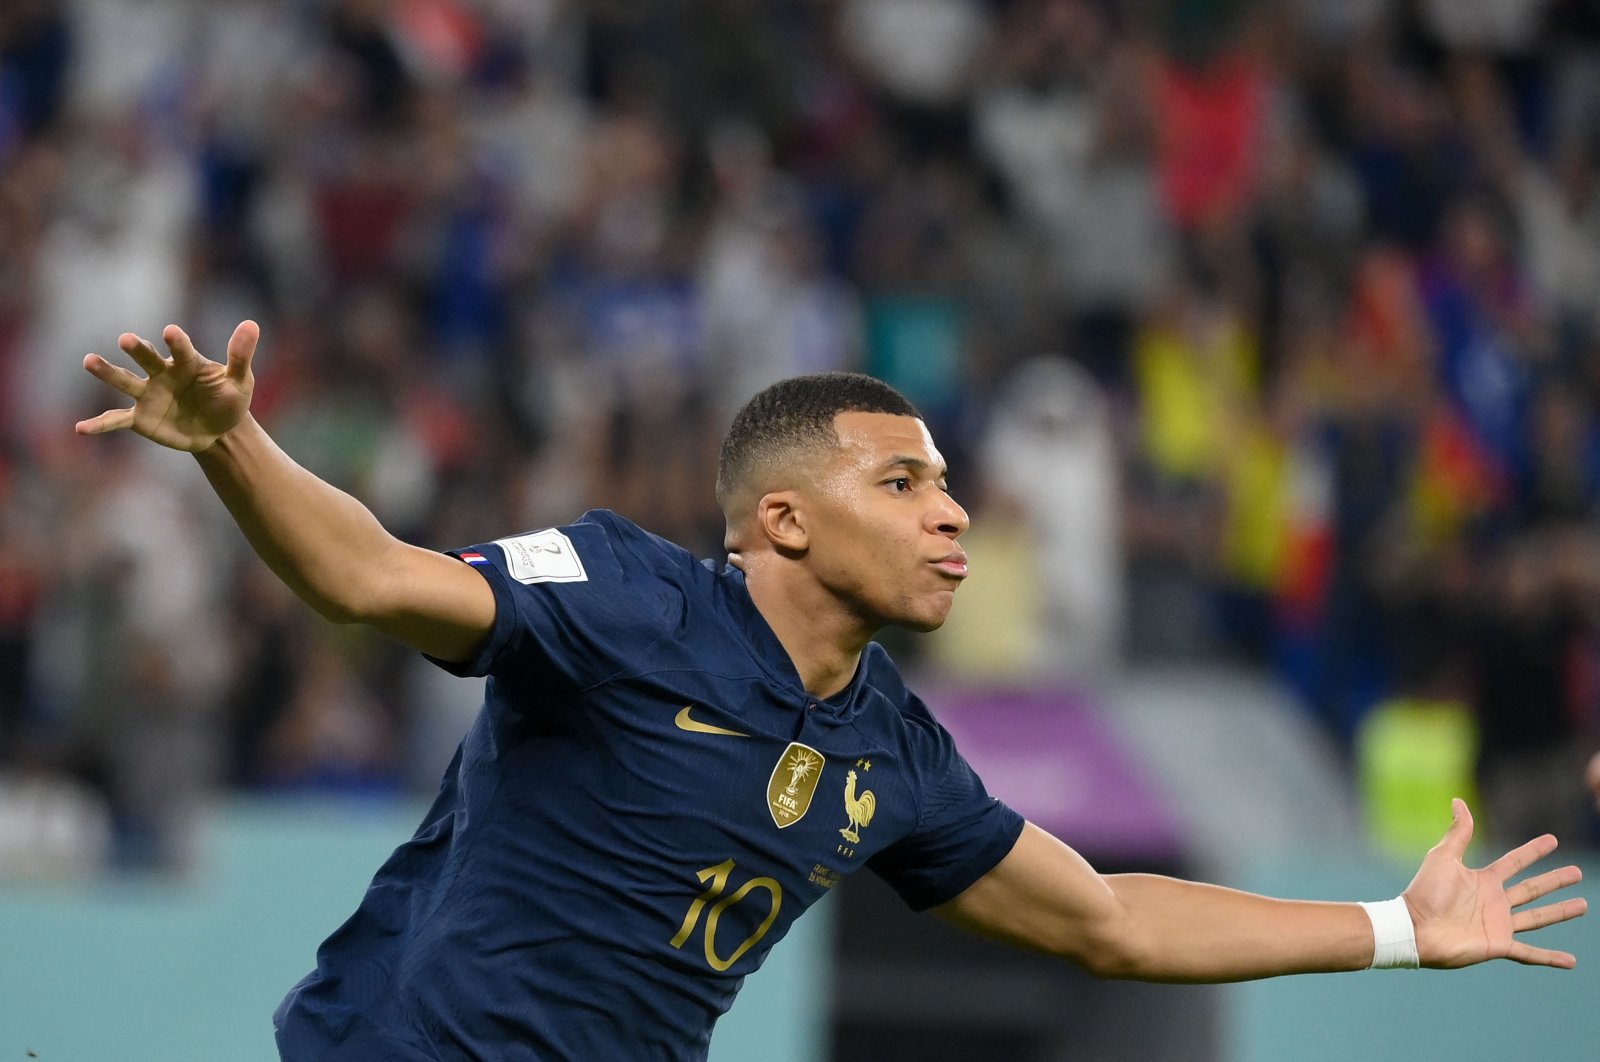 Juara bertahan Piala Dunia Prancis di babak 16 besar dengan dua gol Mbappe